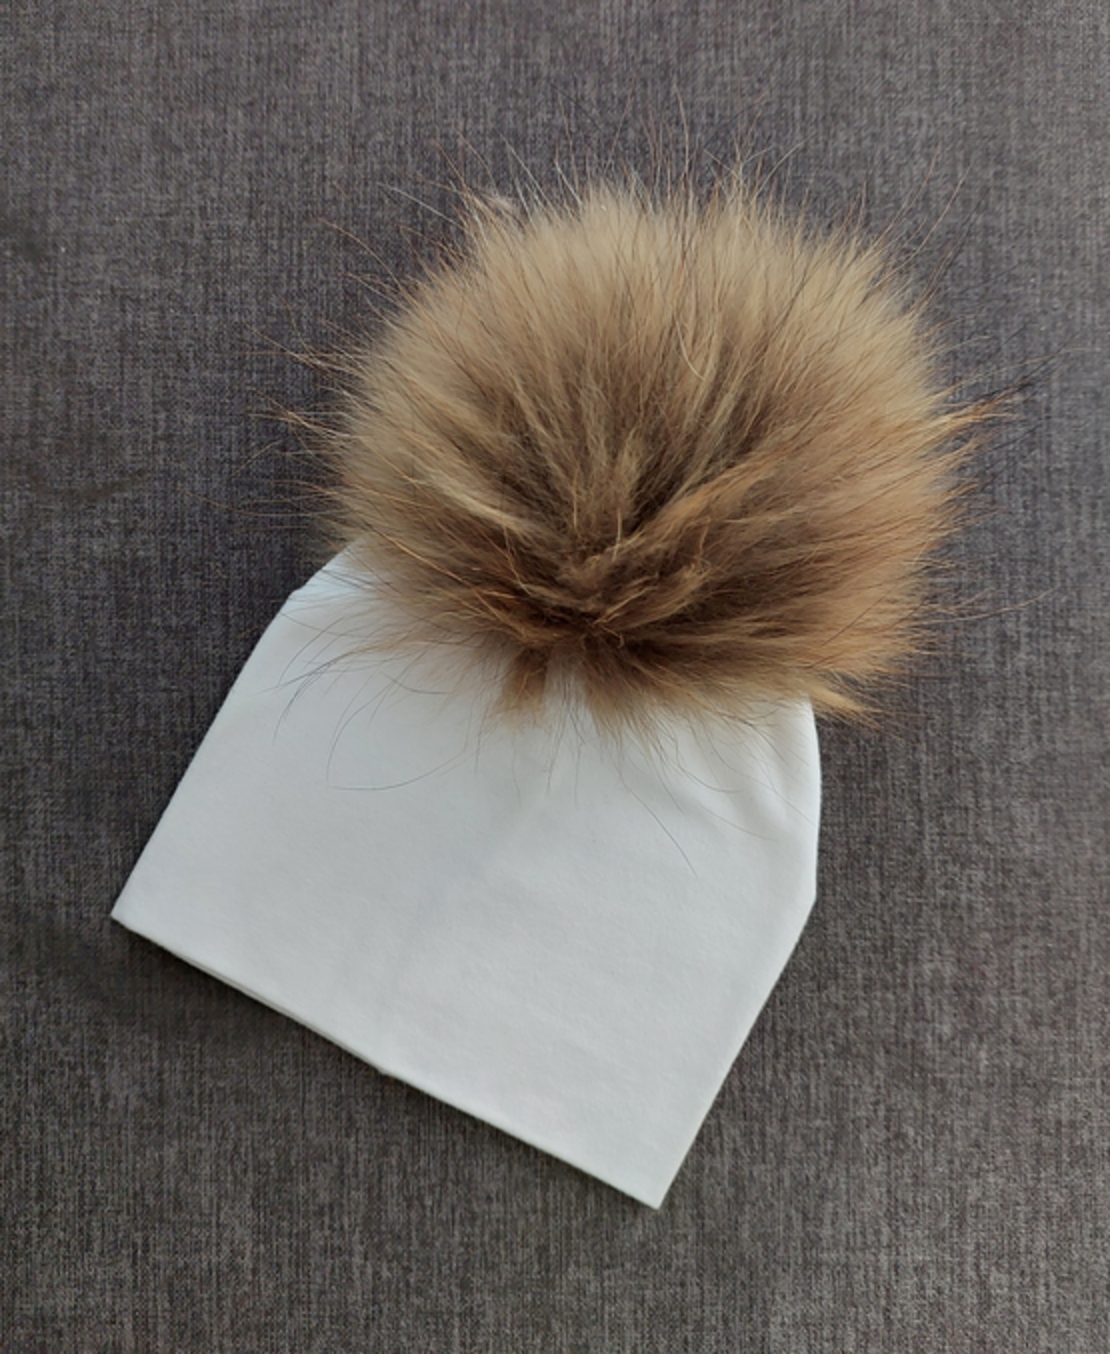 כובע טריקו בצבע לבן עם פונפון בגוון חום - מידה 0-3